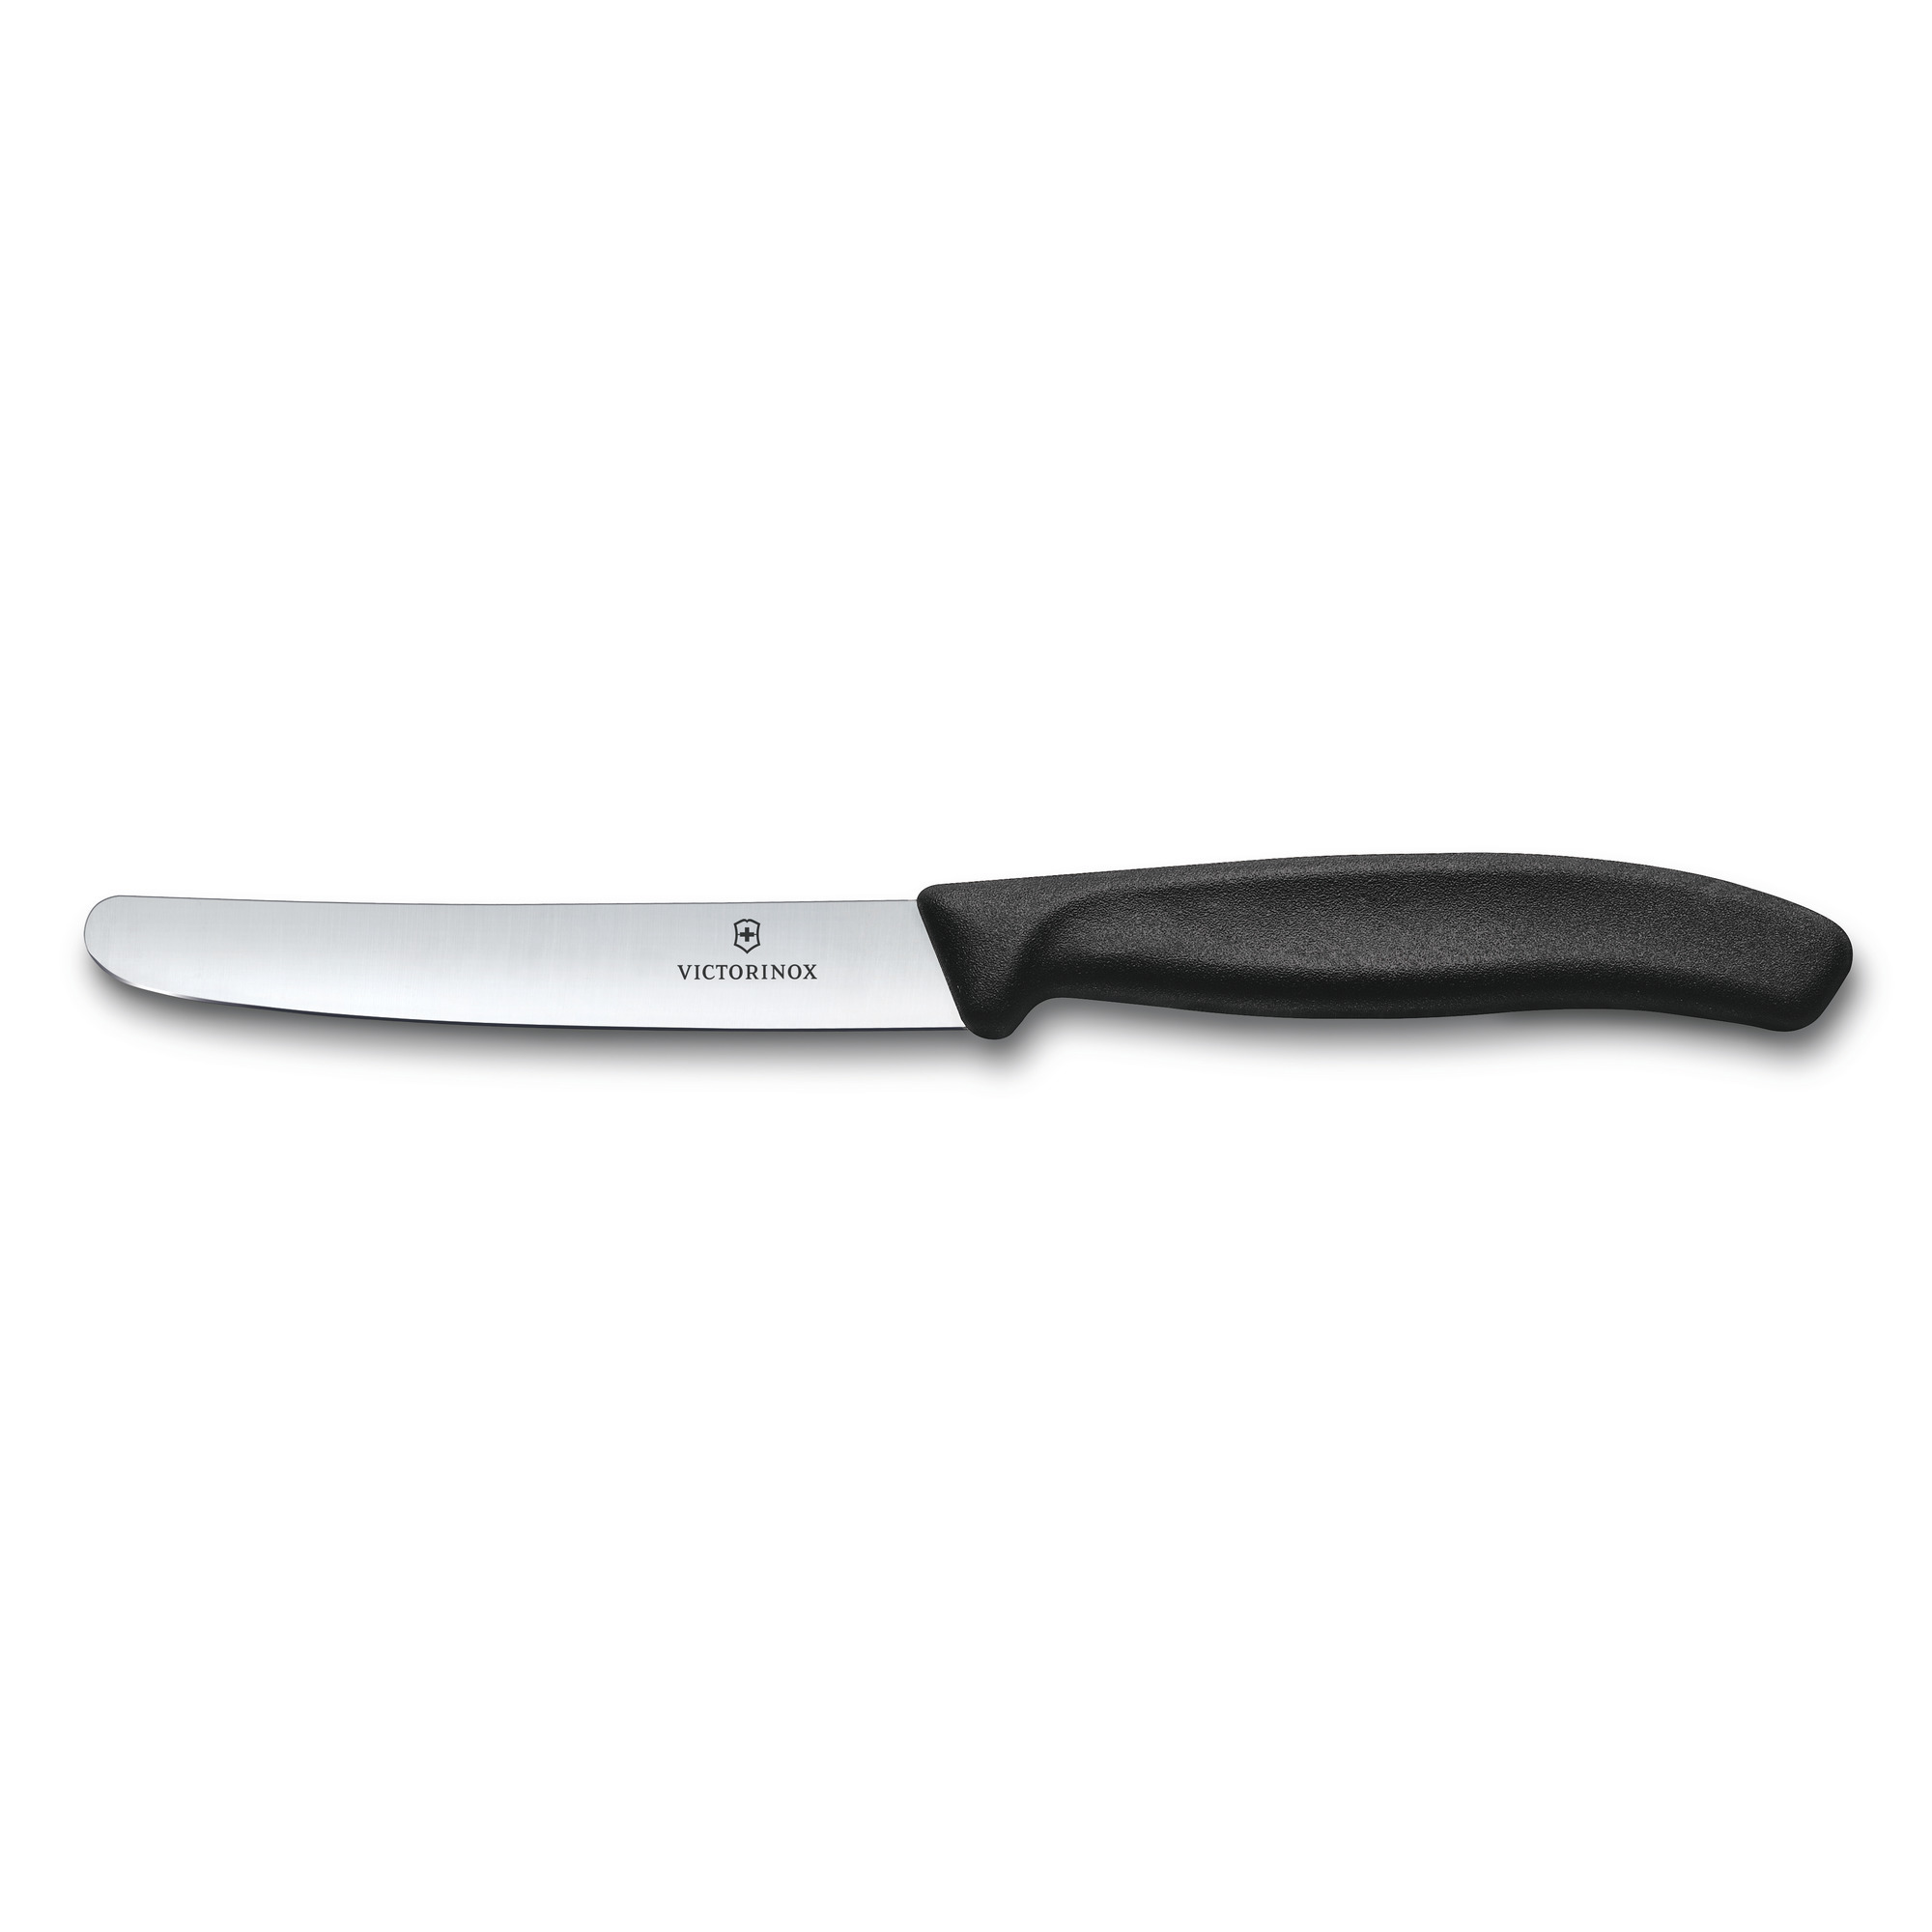 Нож для овощей и фруктов Swiss Classic 11 см Victirinox, нержавеющая сталь, рукоять полипропилен - фото 1